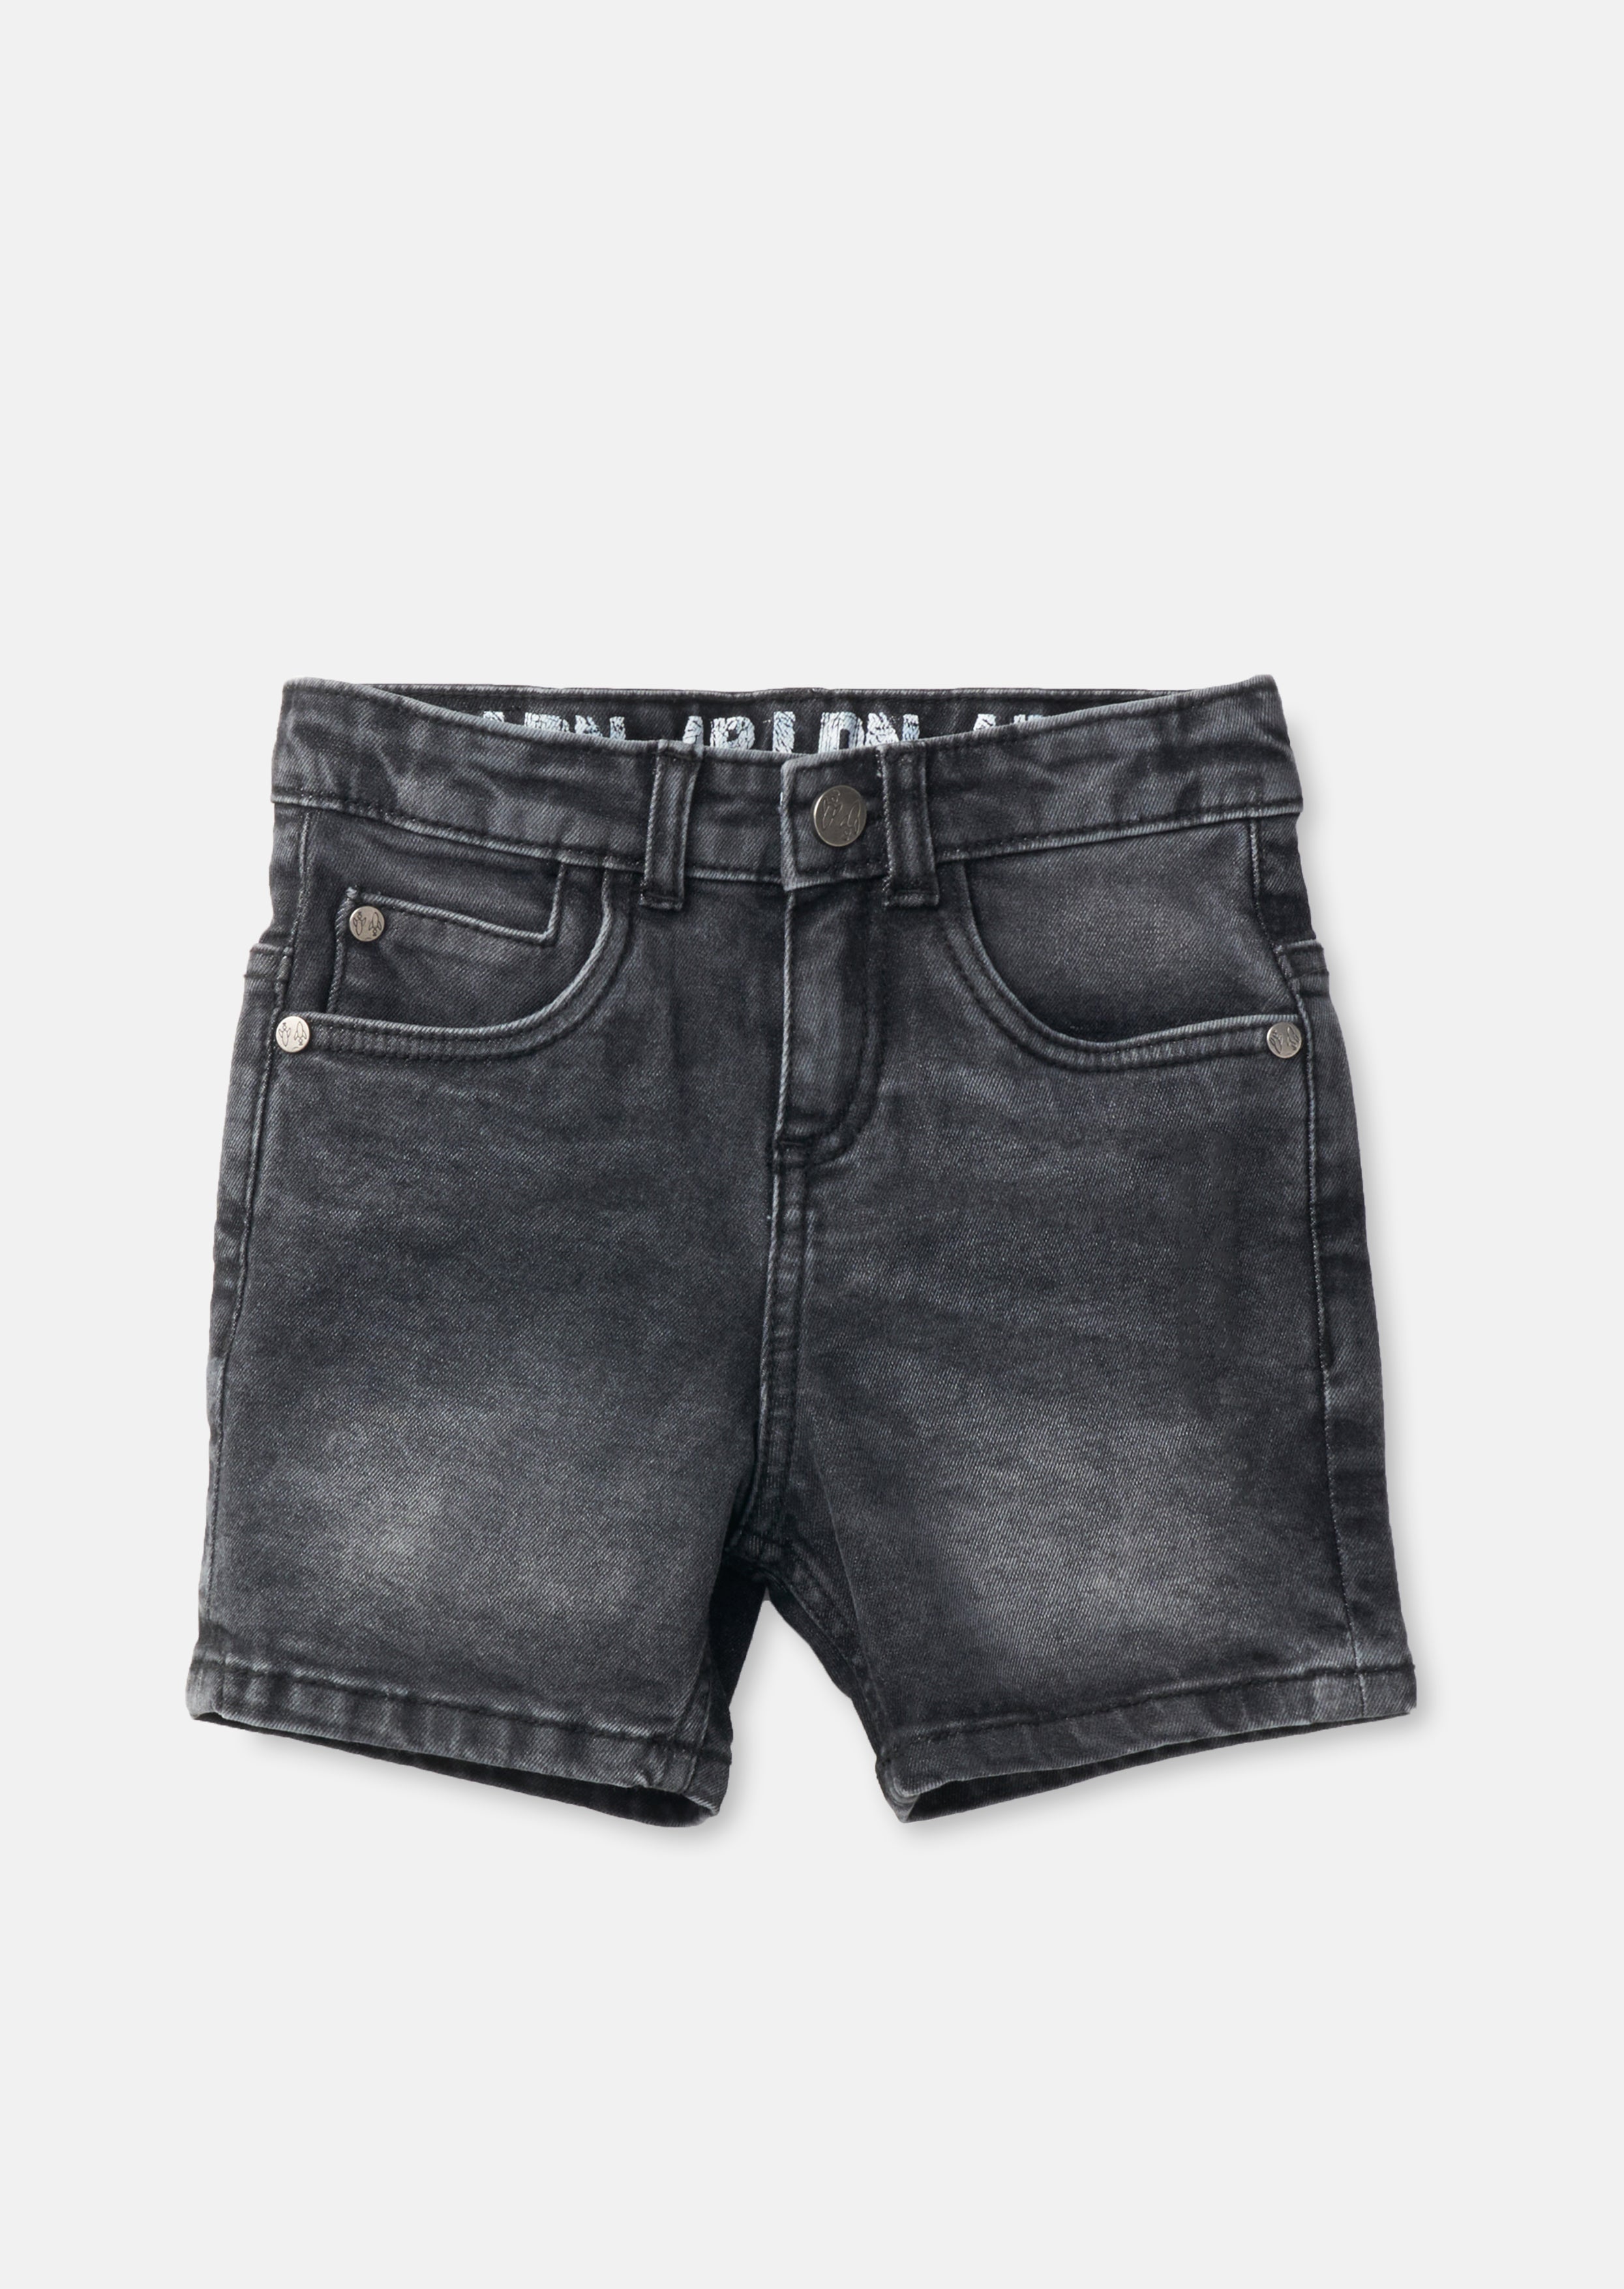 Boys Grey Fiver Fashion Denim Shorts